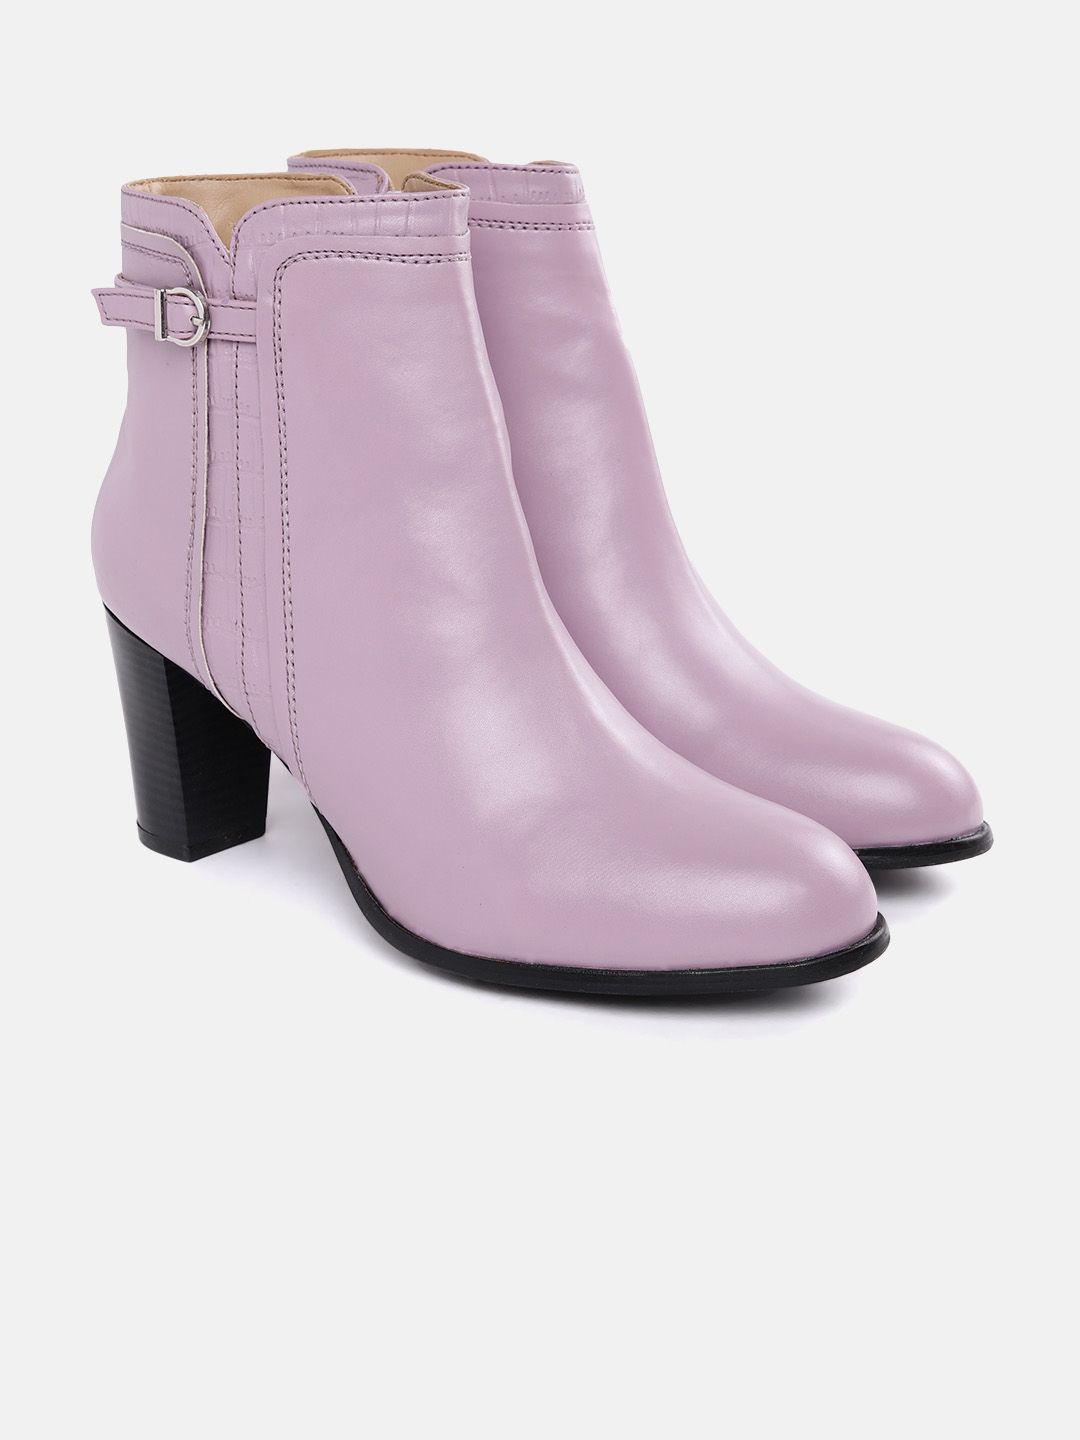 corsica women mid-top block heel regular boots with buckle detail